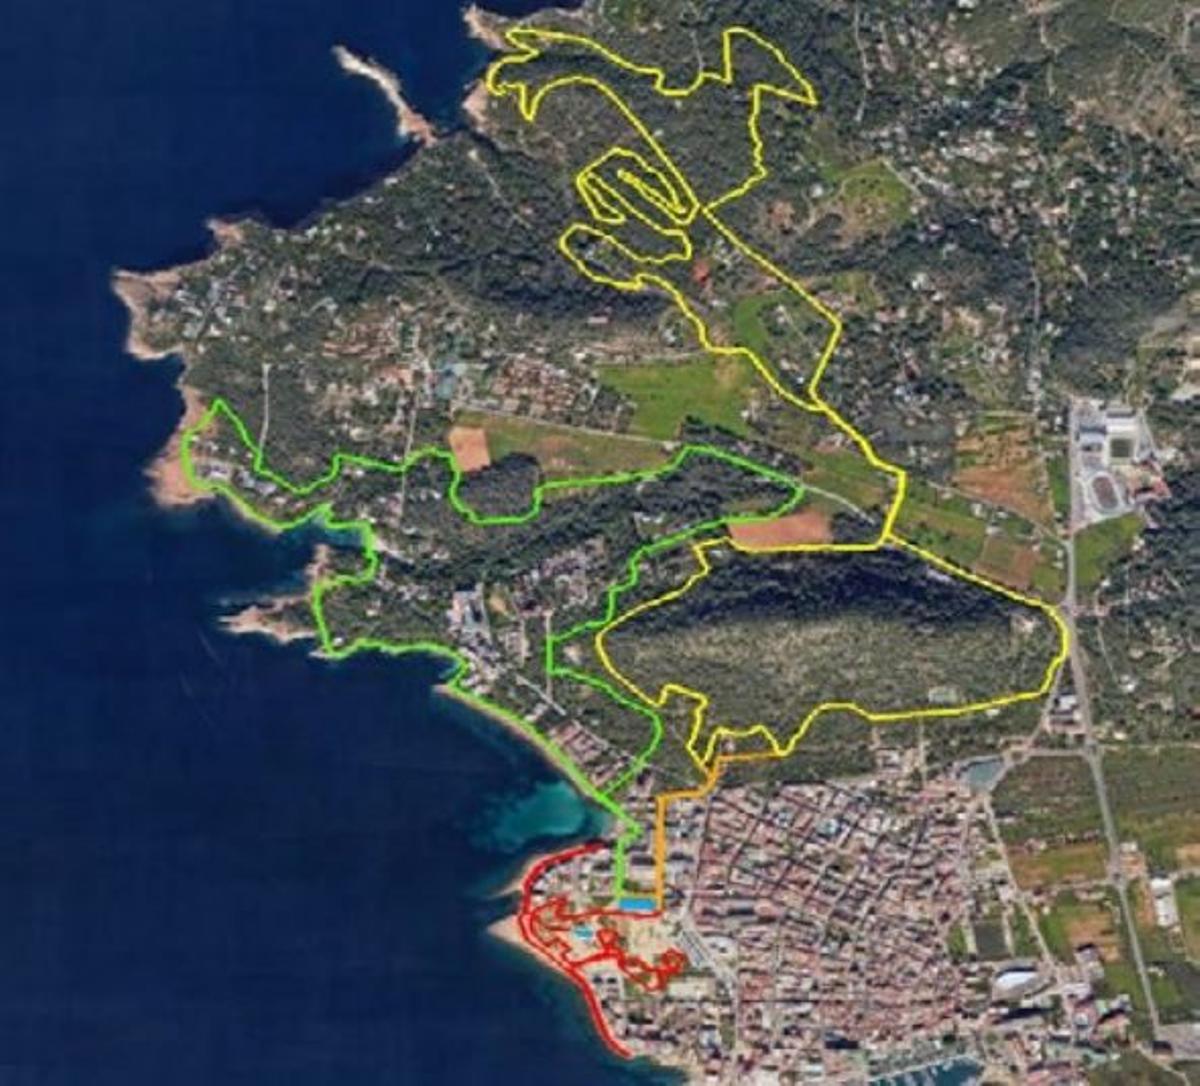 Plano general: azul meta-área de transición, amarillo ciclismo BTT, verde carrera a pie 1 y rojo carrera a pie 2.